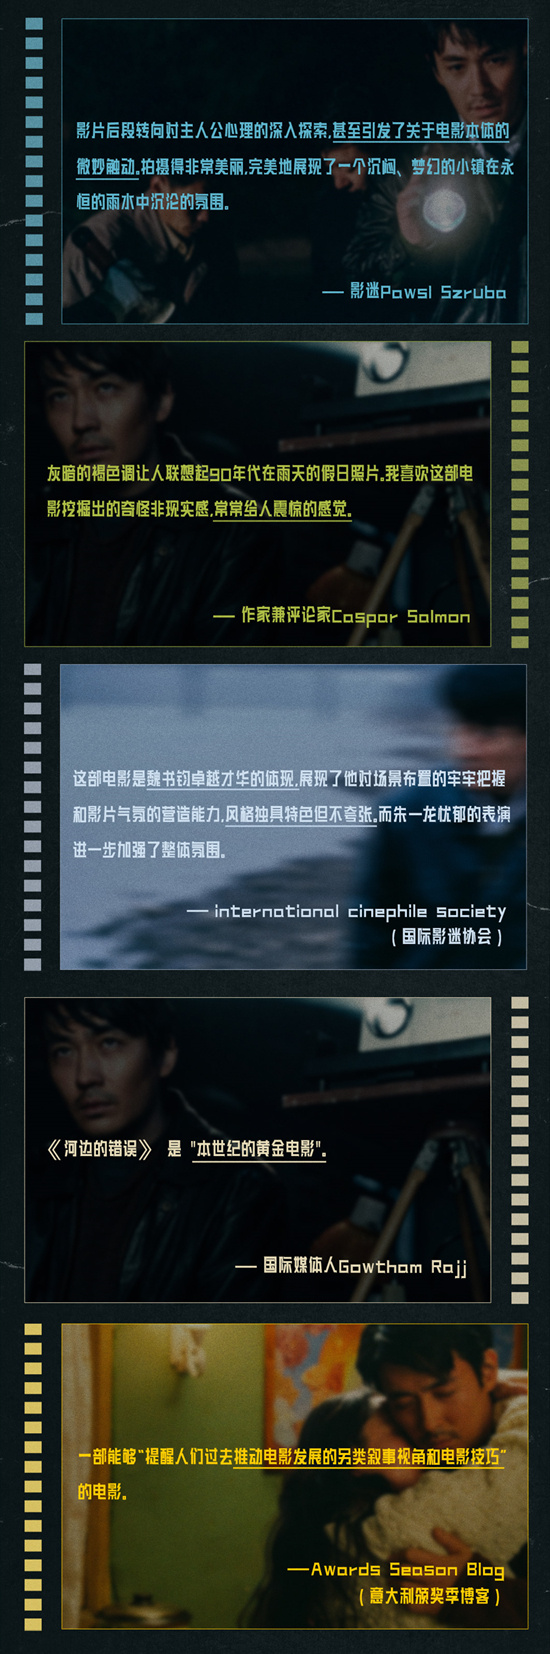 朱一龙新片《河边的错误》首映 口碑获赞闪耀戛纳(图2)